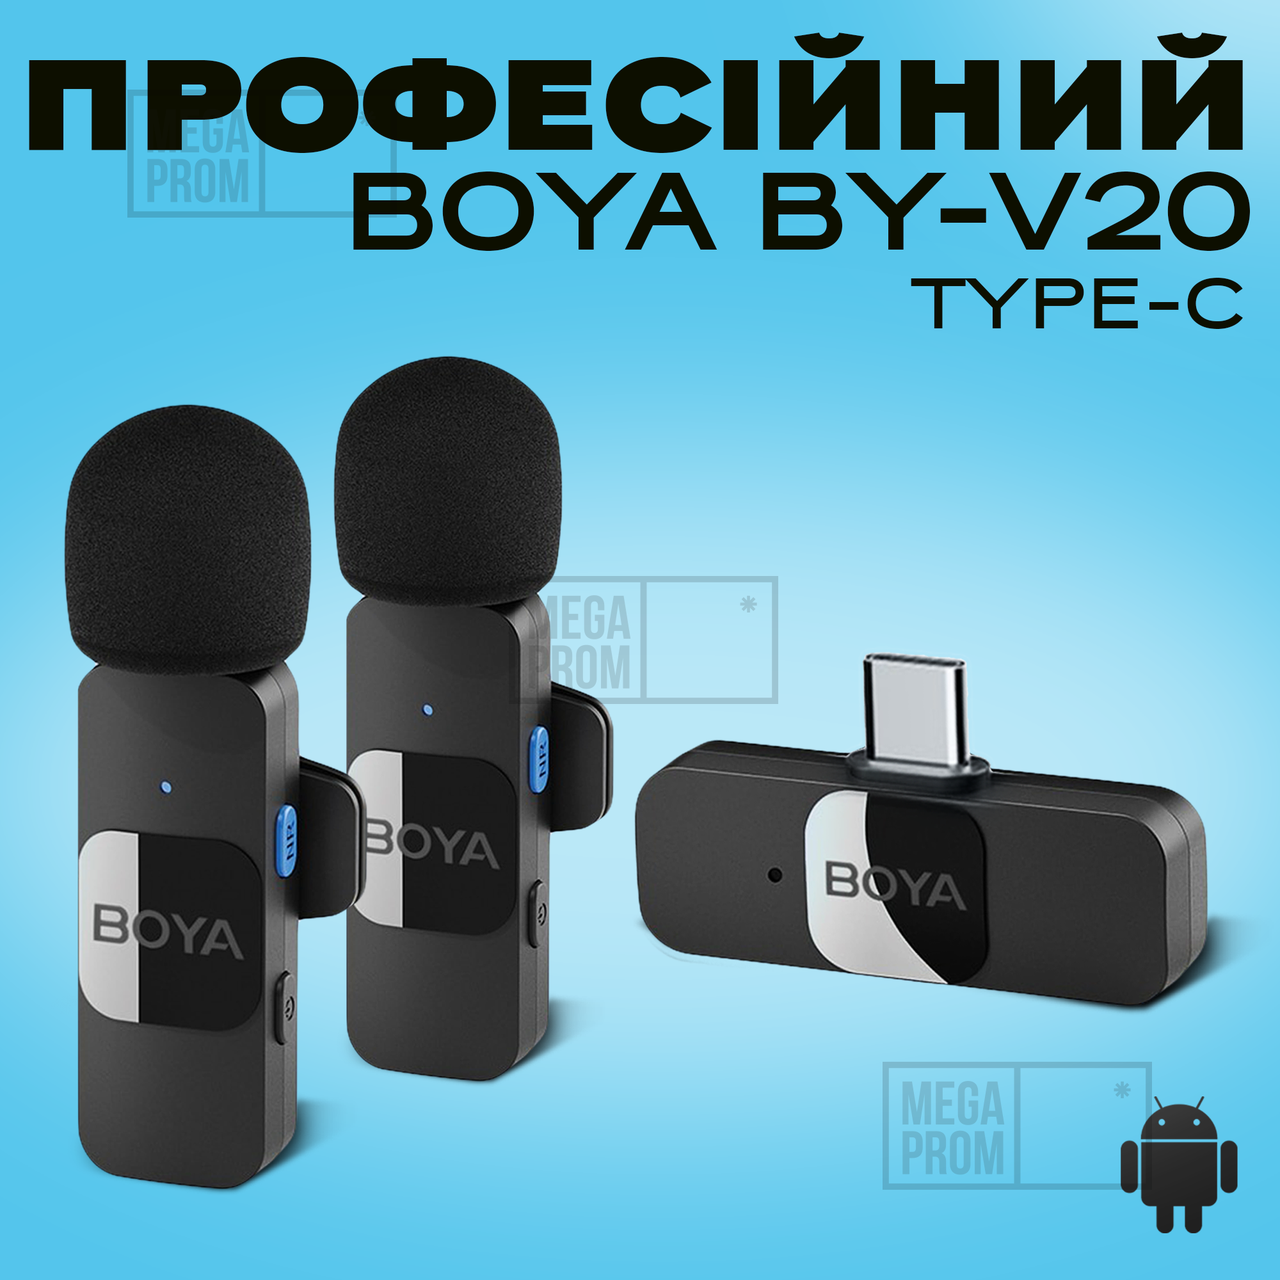 Професійний бездротовий подвійний петличний мікрофон Boya BY-V20 Type-C петлочка для телефона